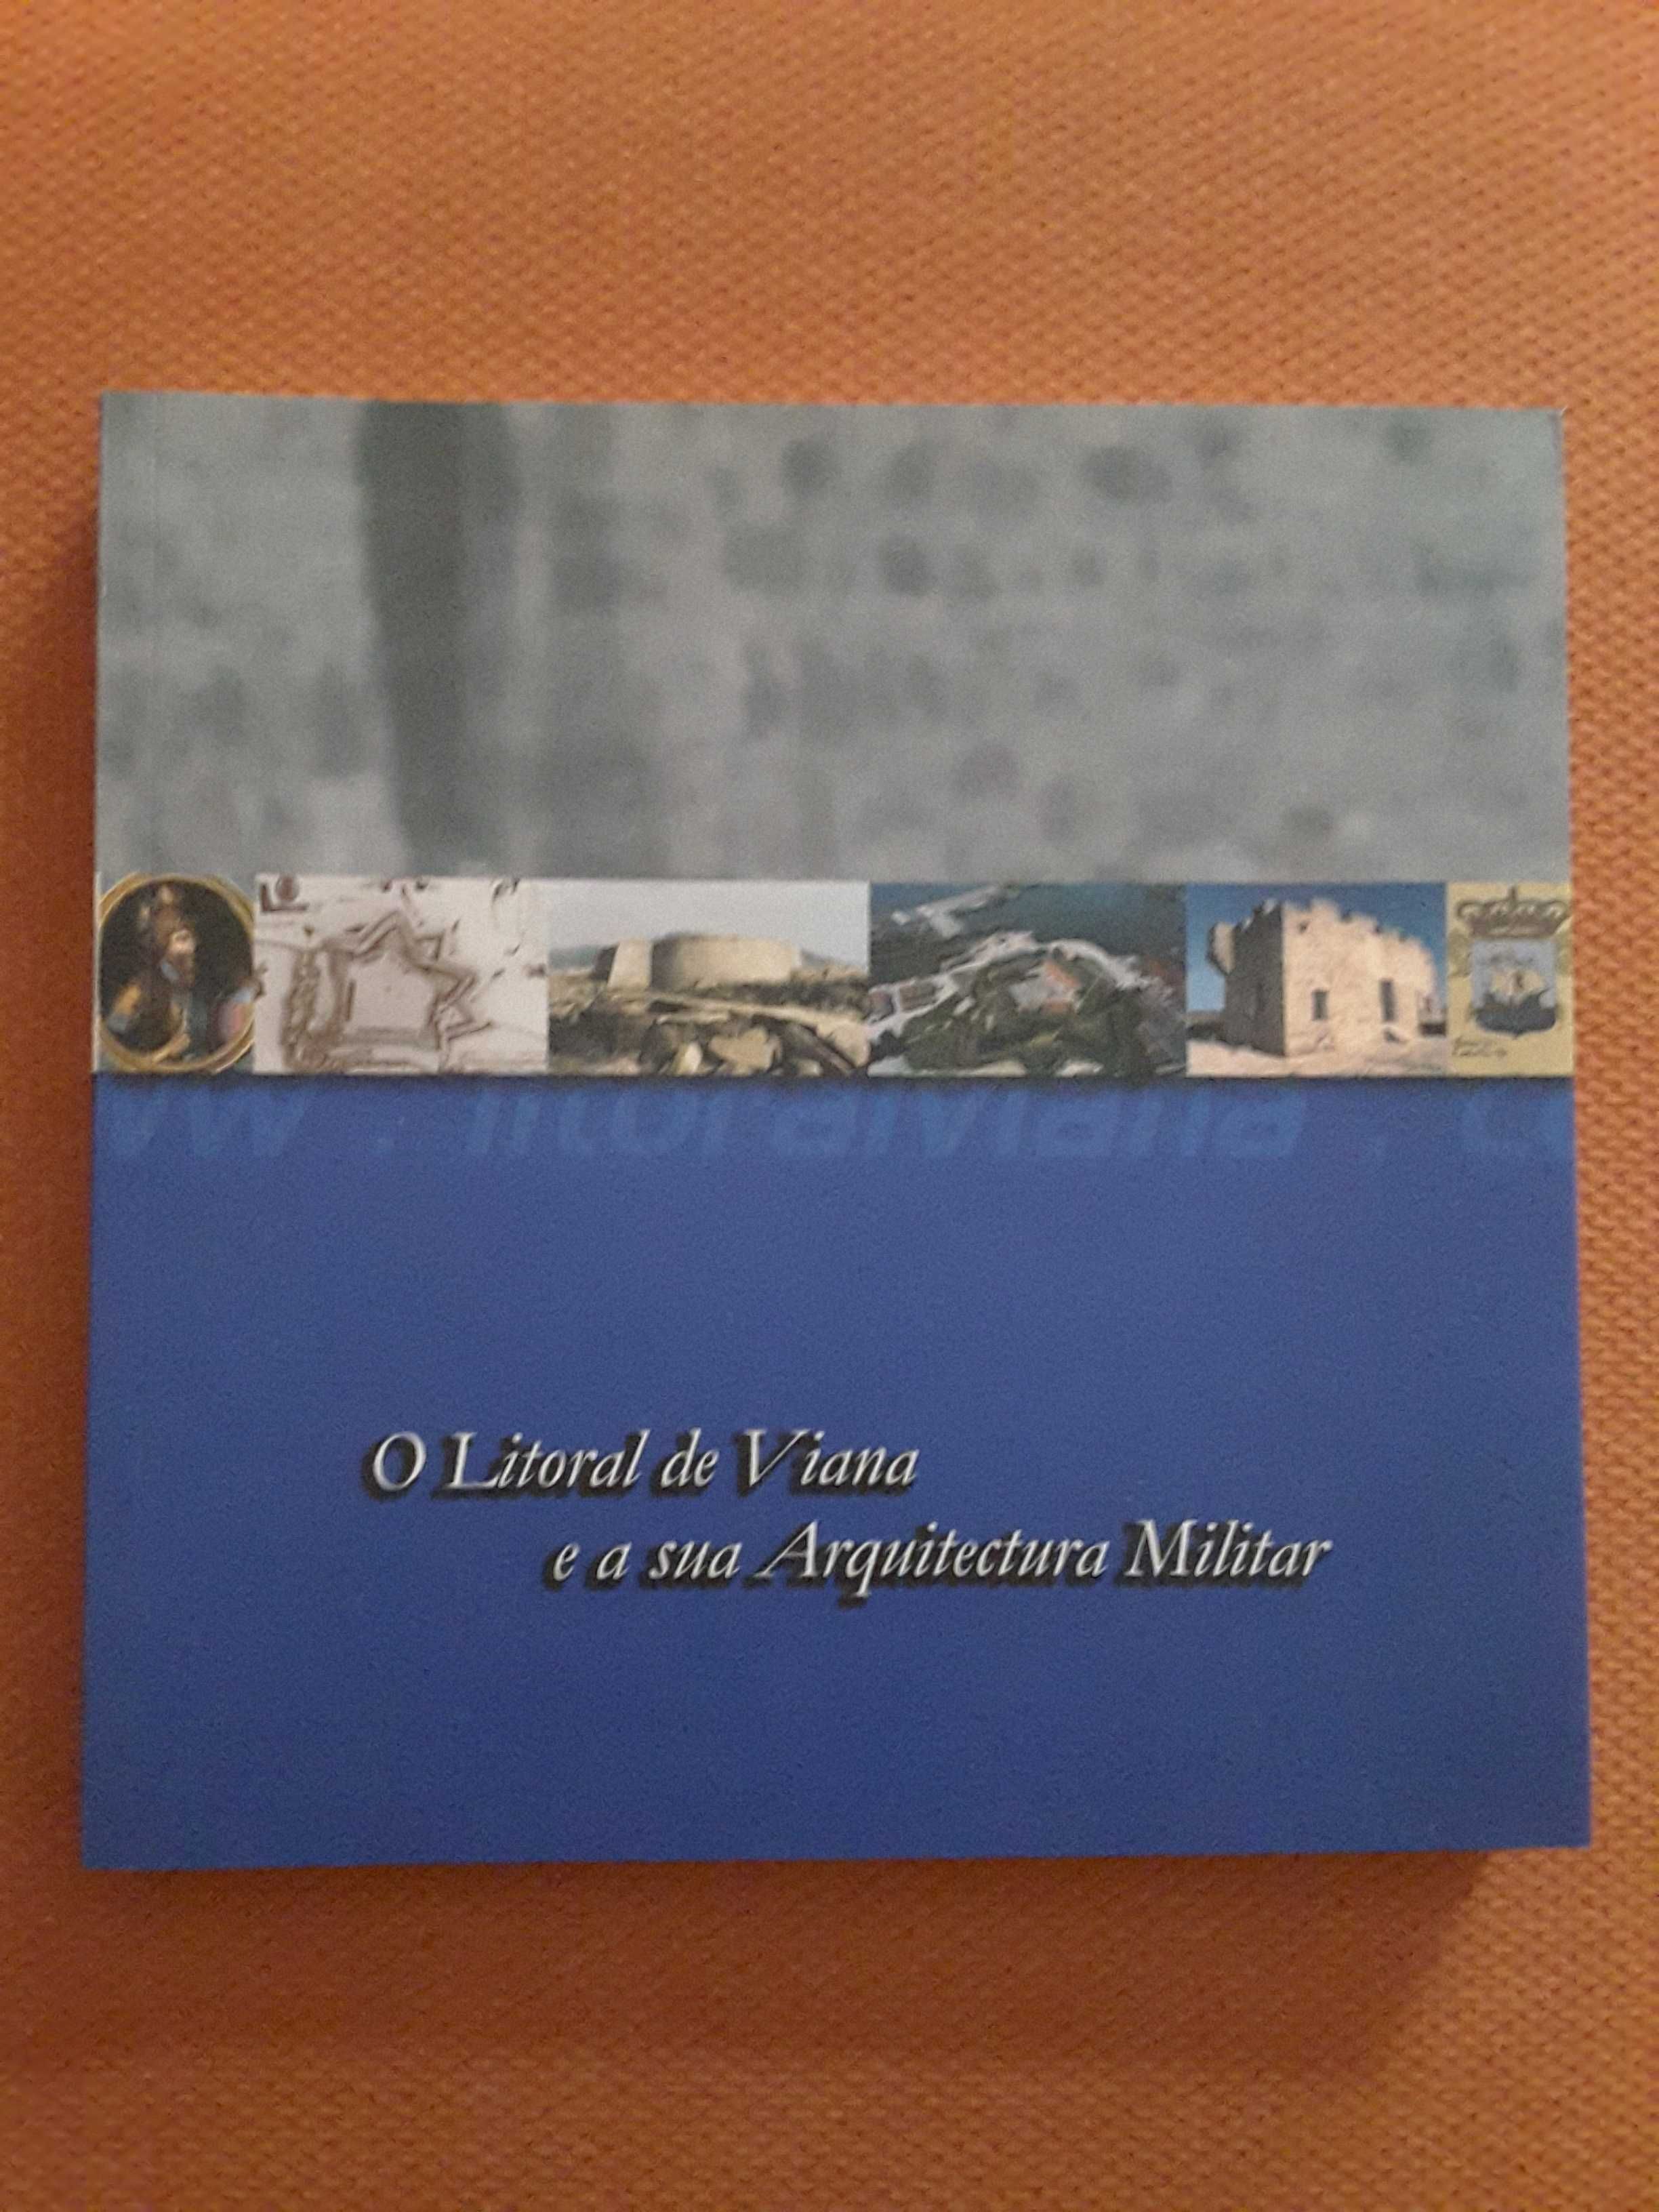 Terras Templárias de Idanha / Viana e a sua Arquitectura Militar